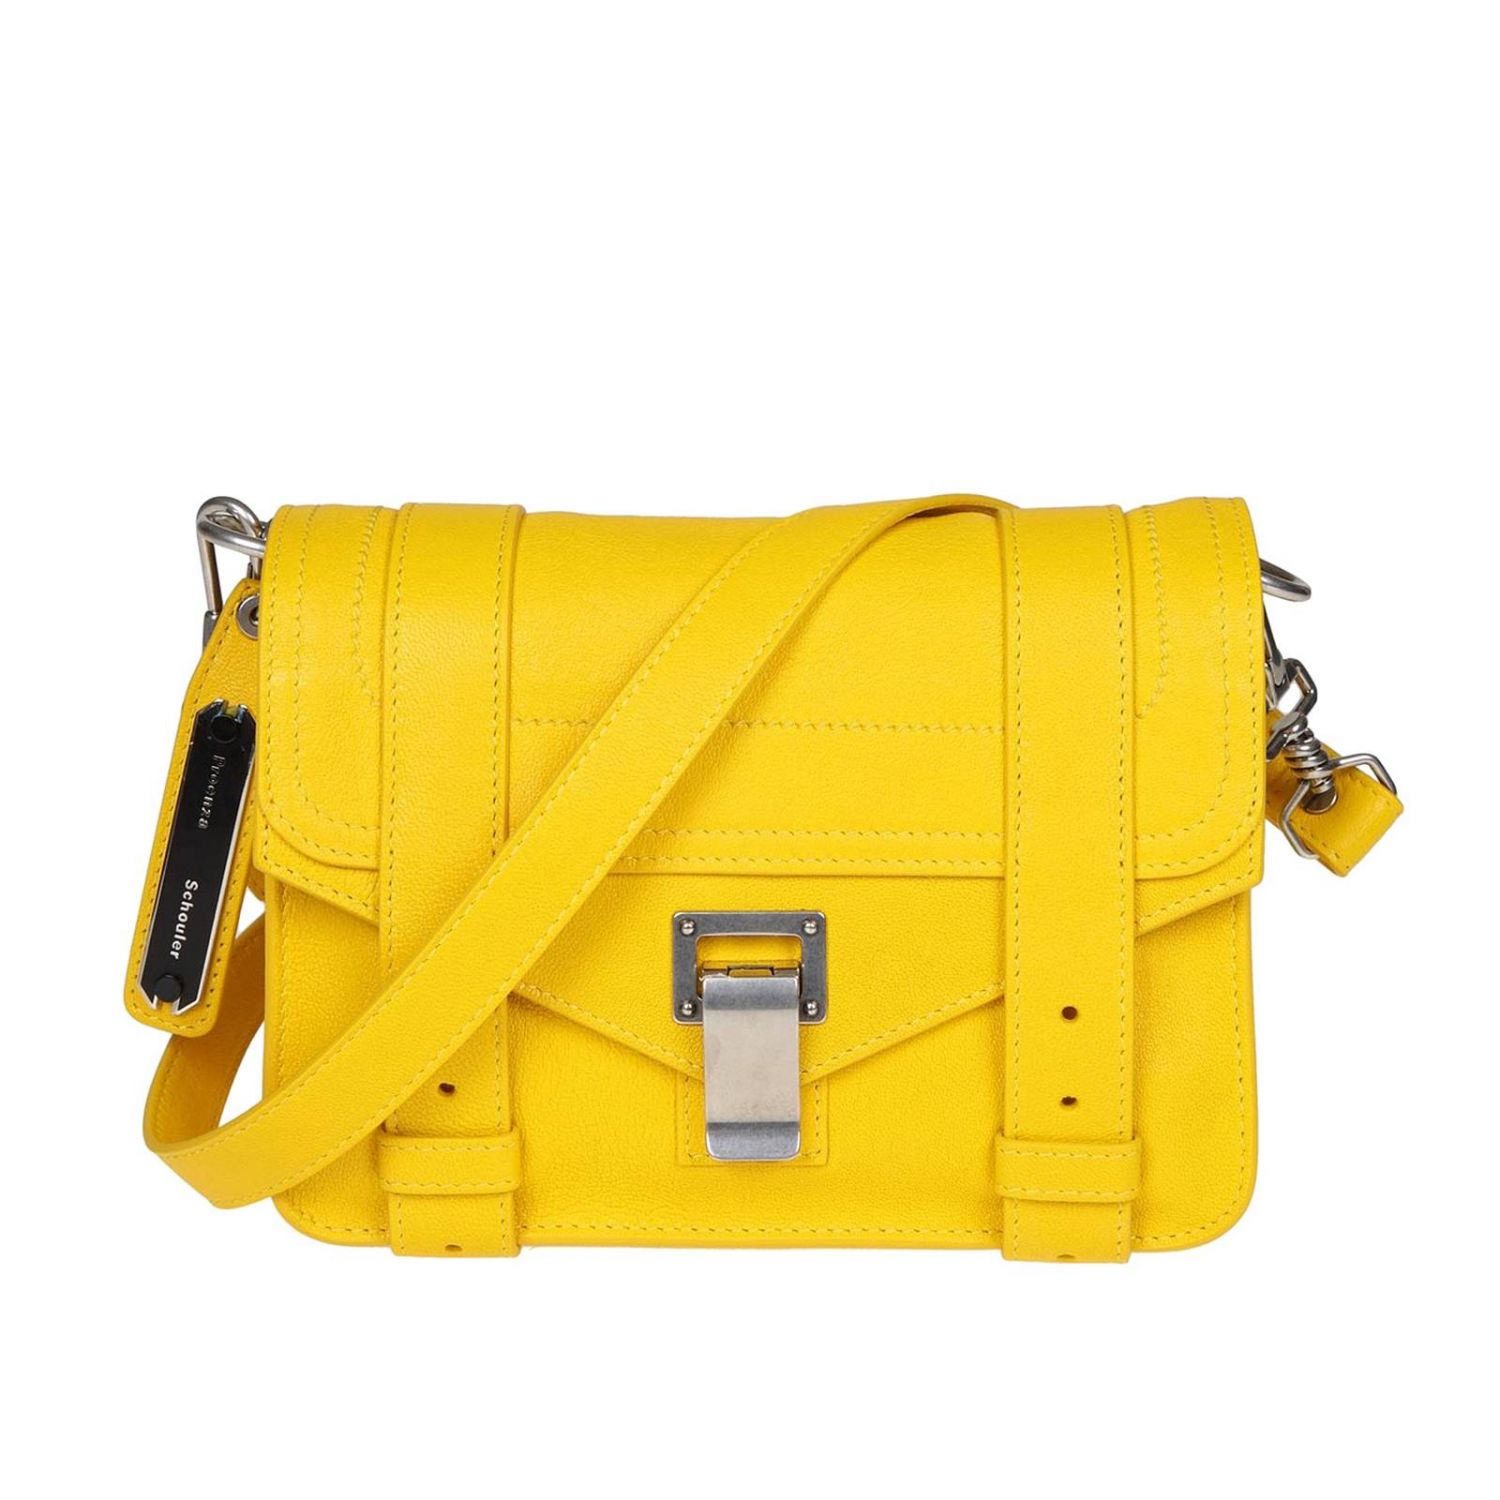 Proenza Schouler Outlet: mini bag for woman - Yellow | Proenza Schouler ...